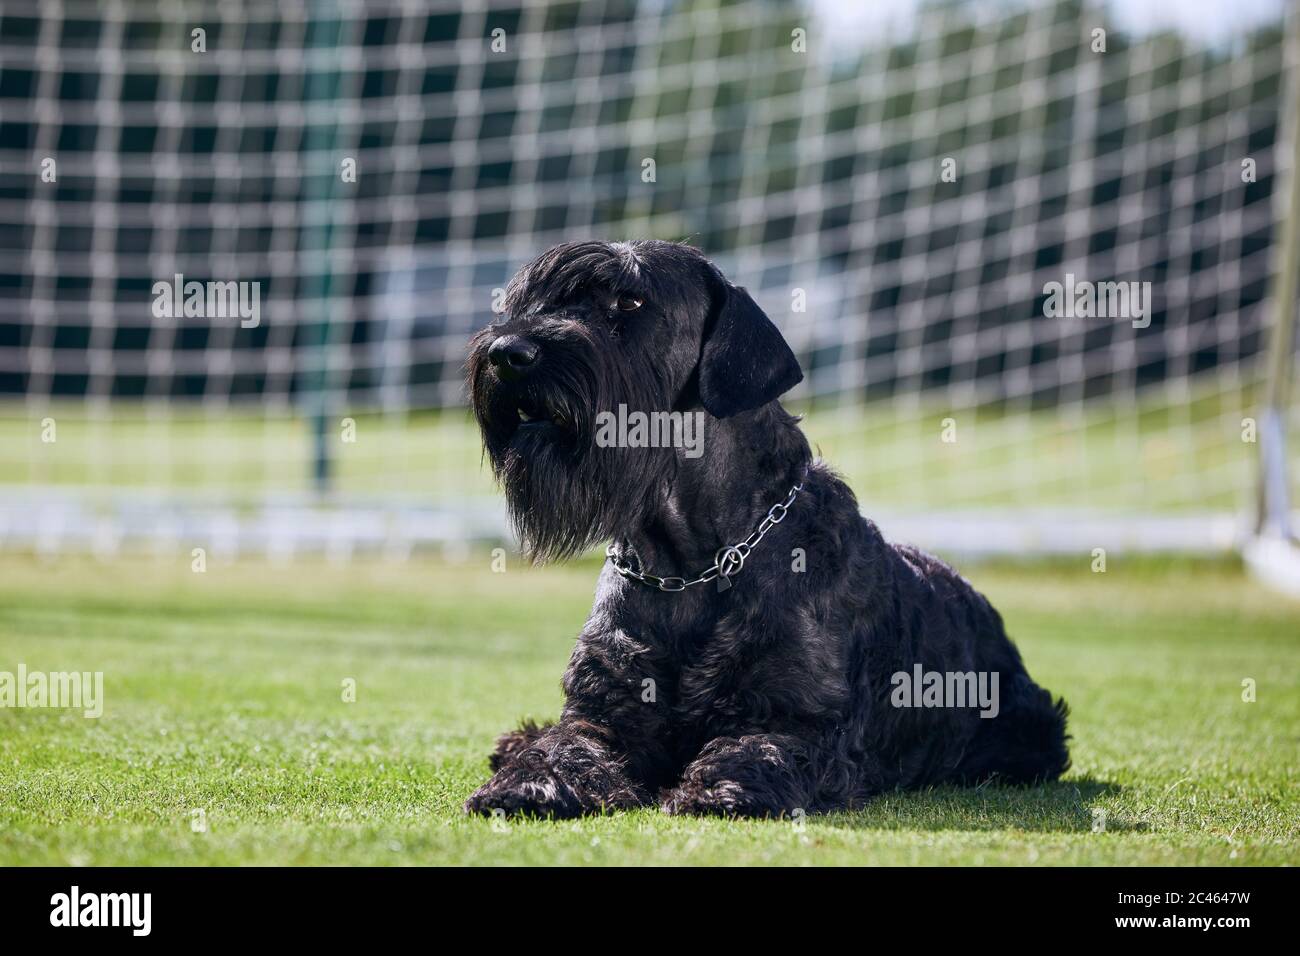 Ritratto di Gigante Schnauzer. Grande cane purebred che posa in un gol di calcio. Foto Stock